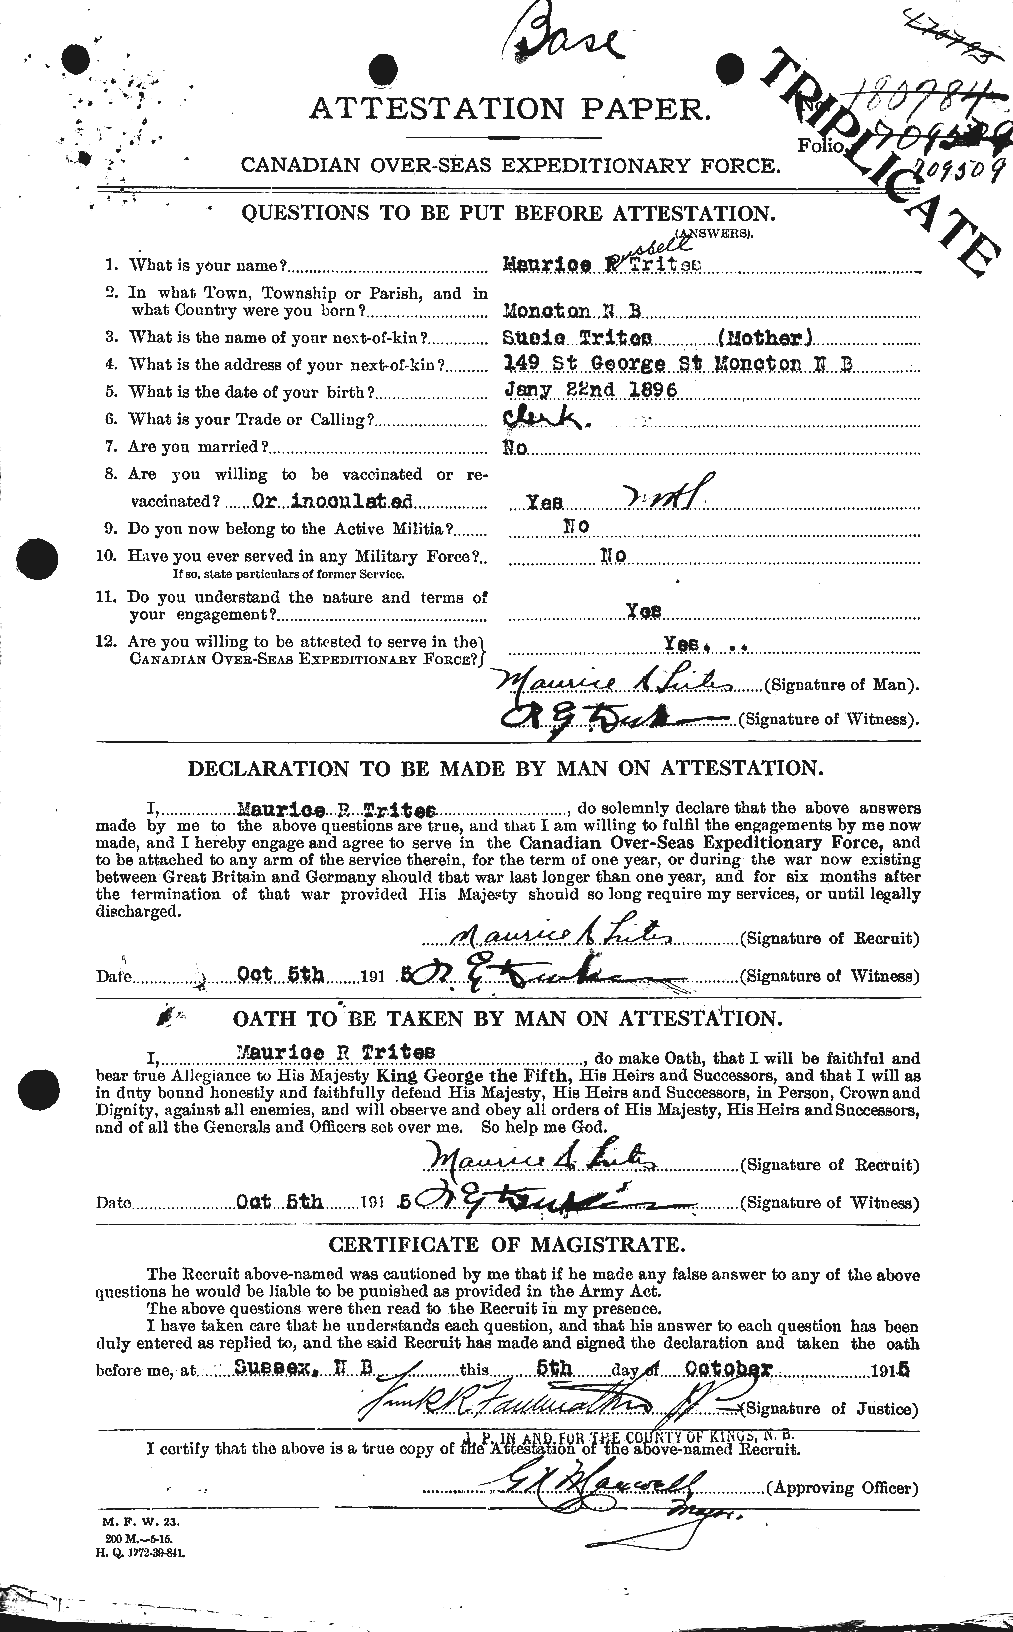 Dossiers du Personnel de la Première Guerre mondiale - CEC 640157a